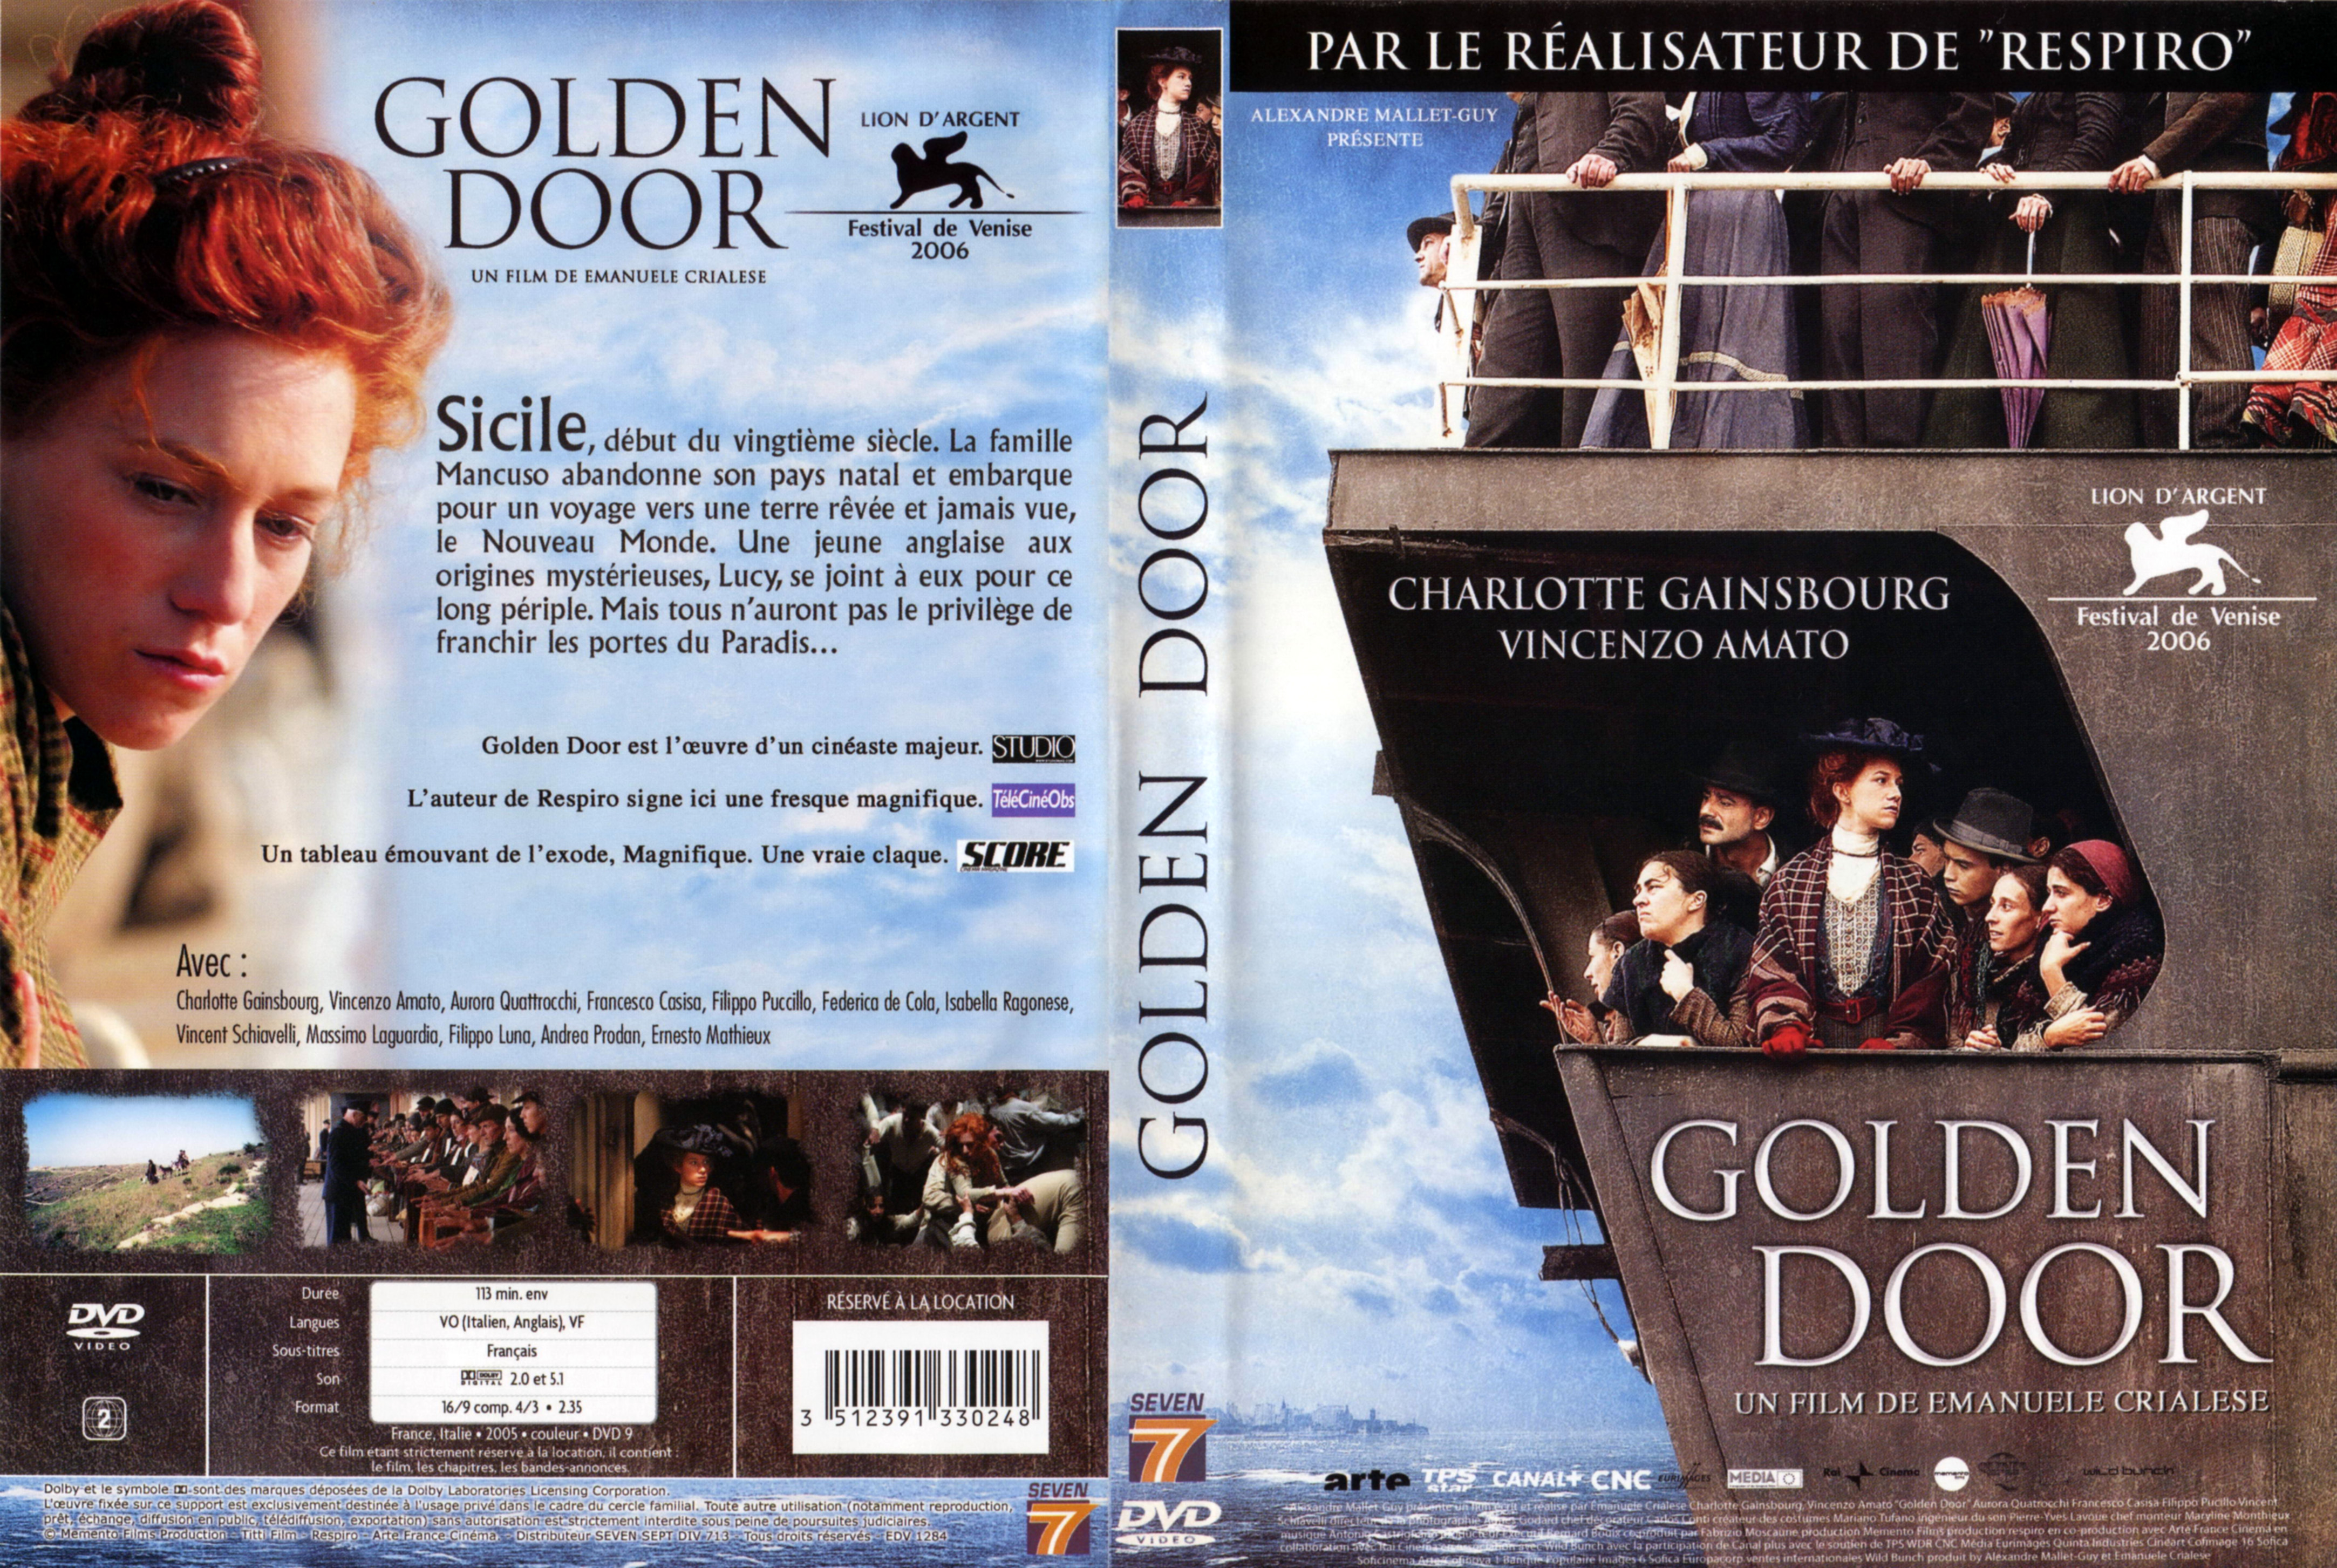 Jaquette DVD Golden door v2